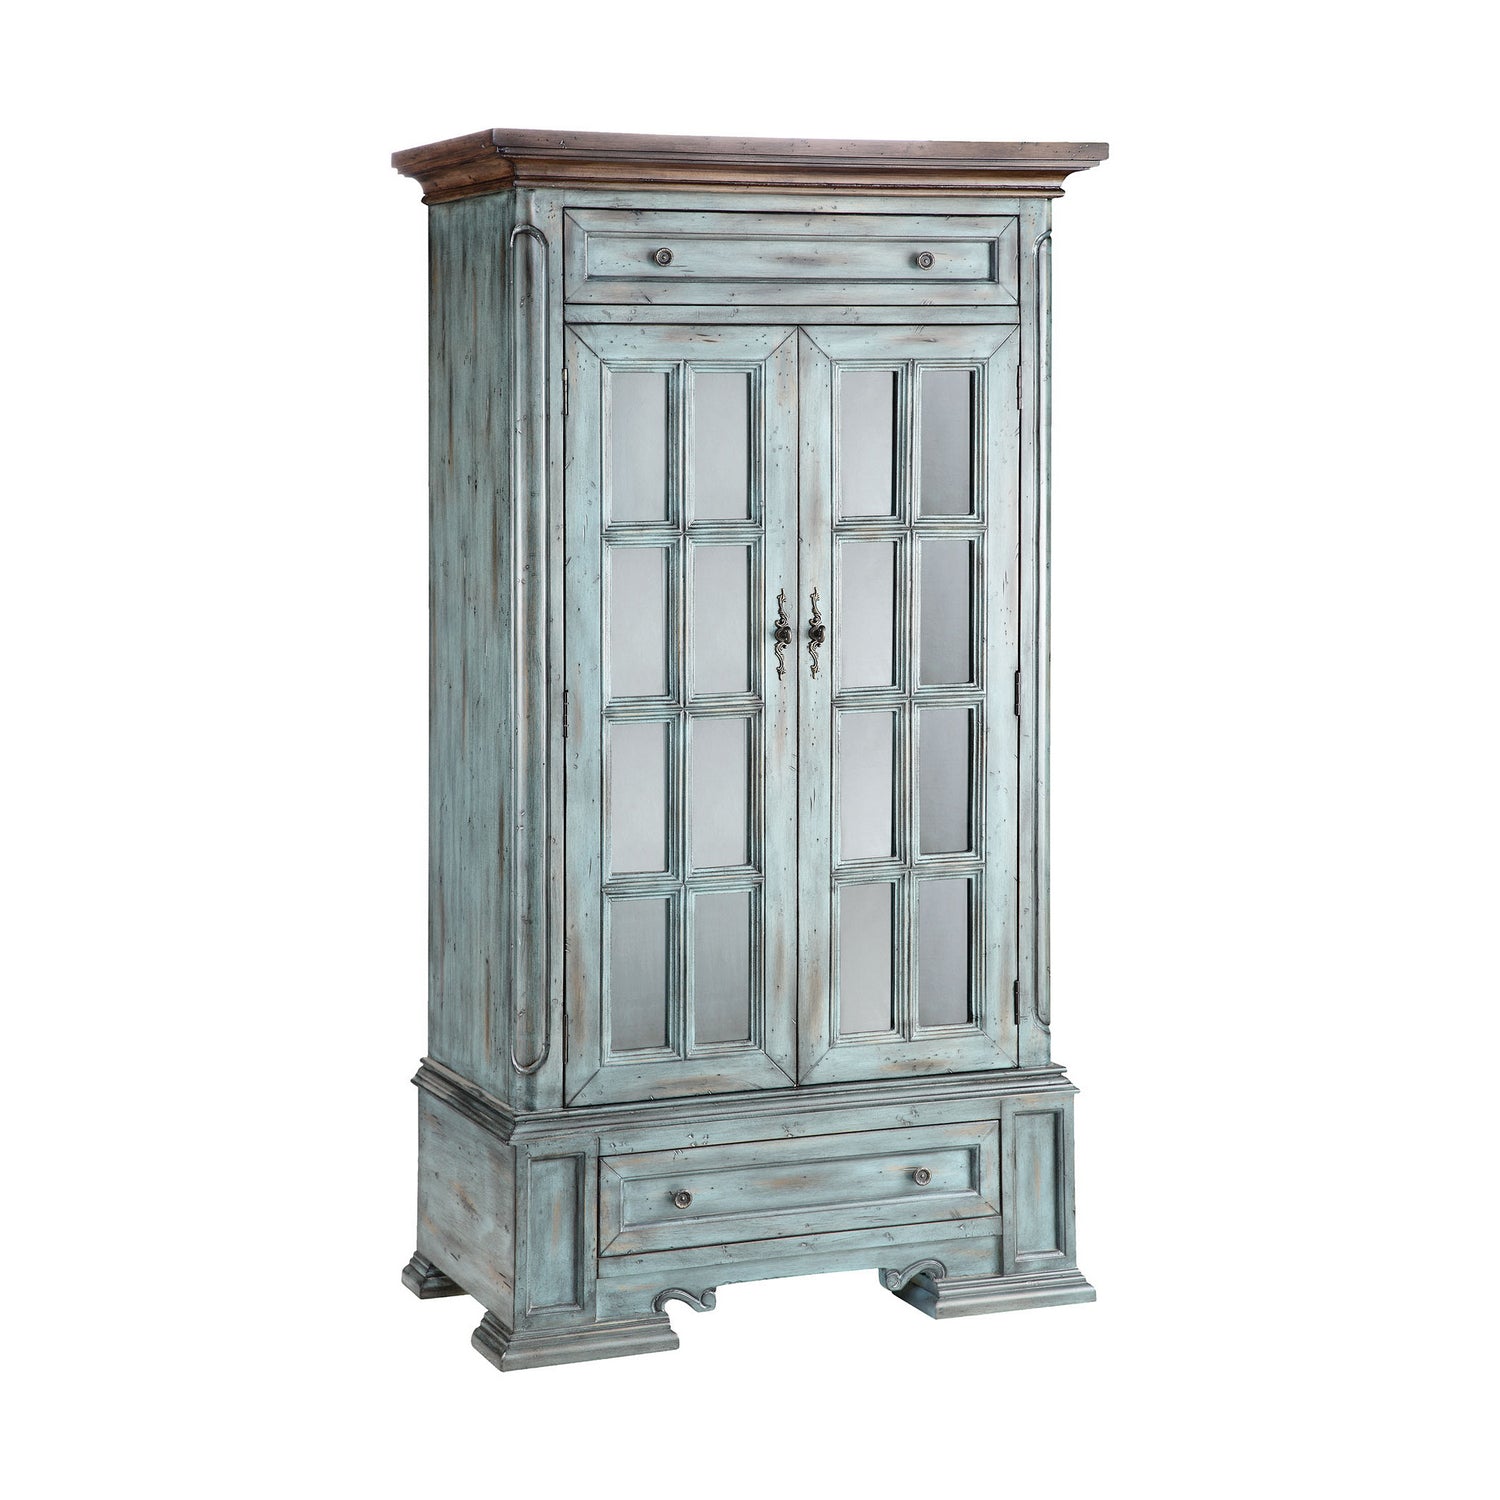 ELK Home - 12031 - Cabinet - Hartford - Aged Blue